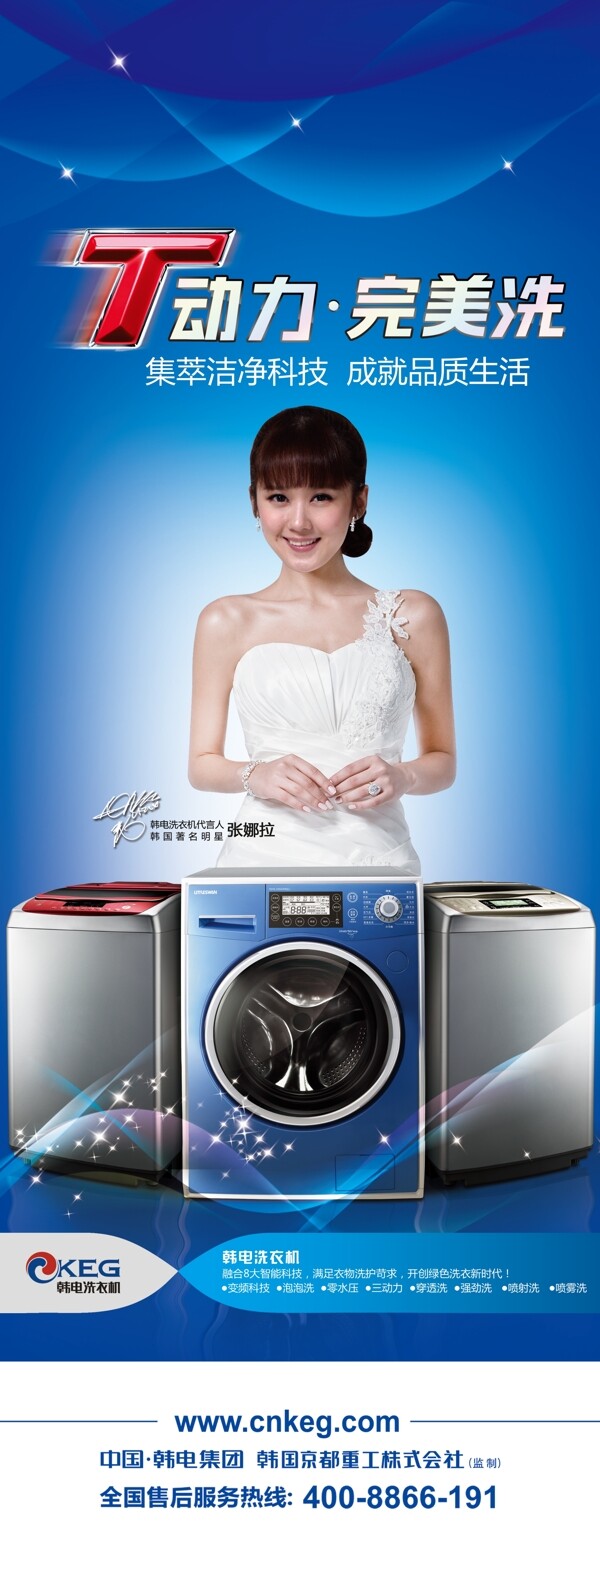 韩电洗衣机图片